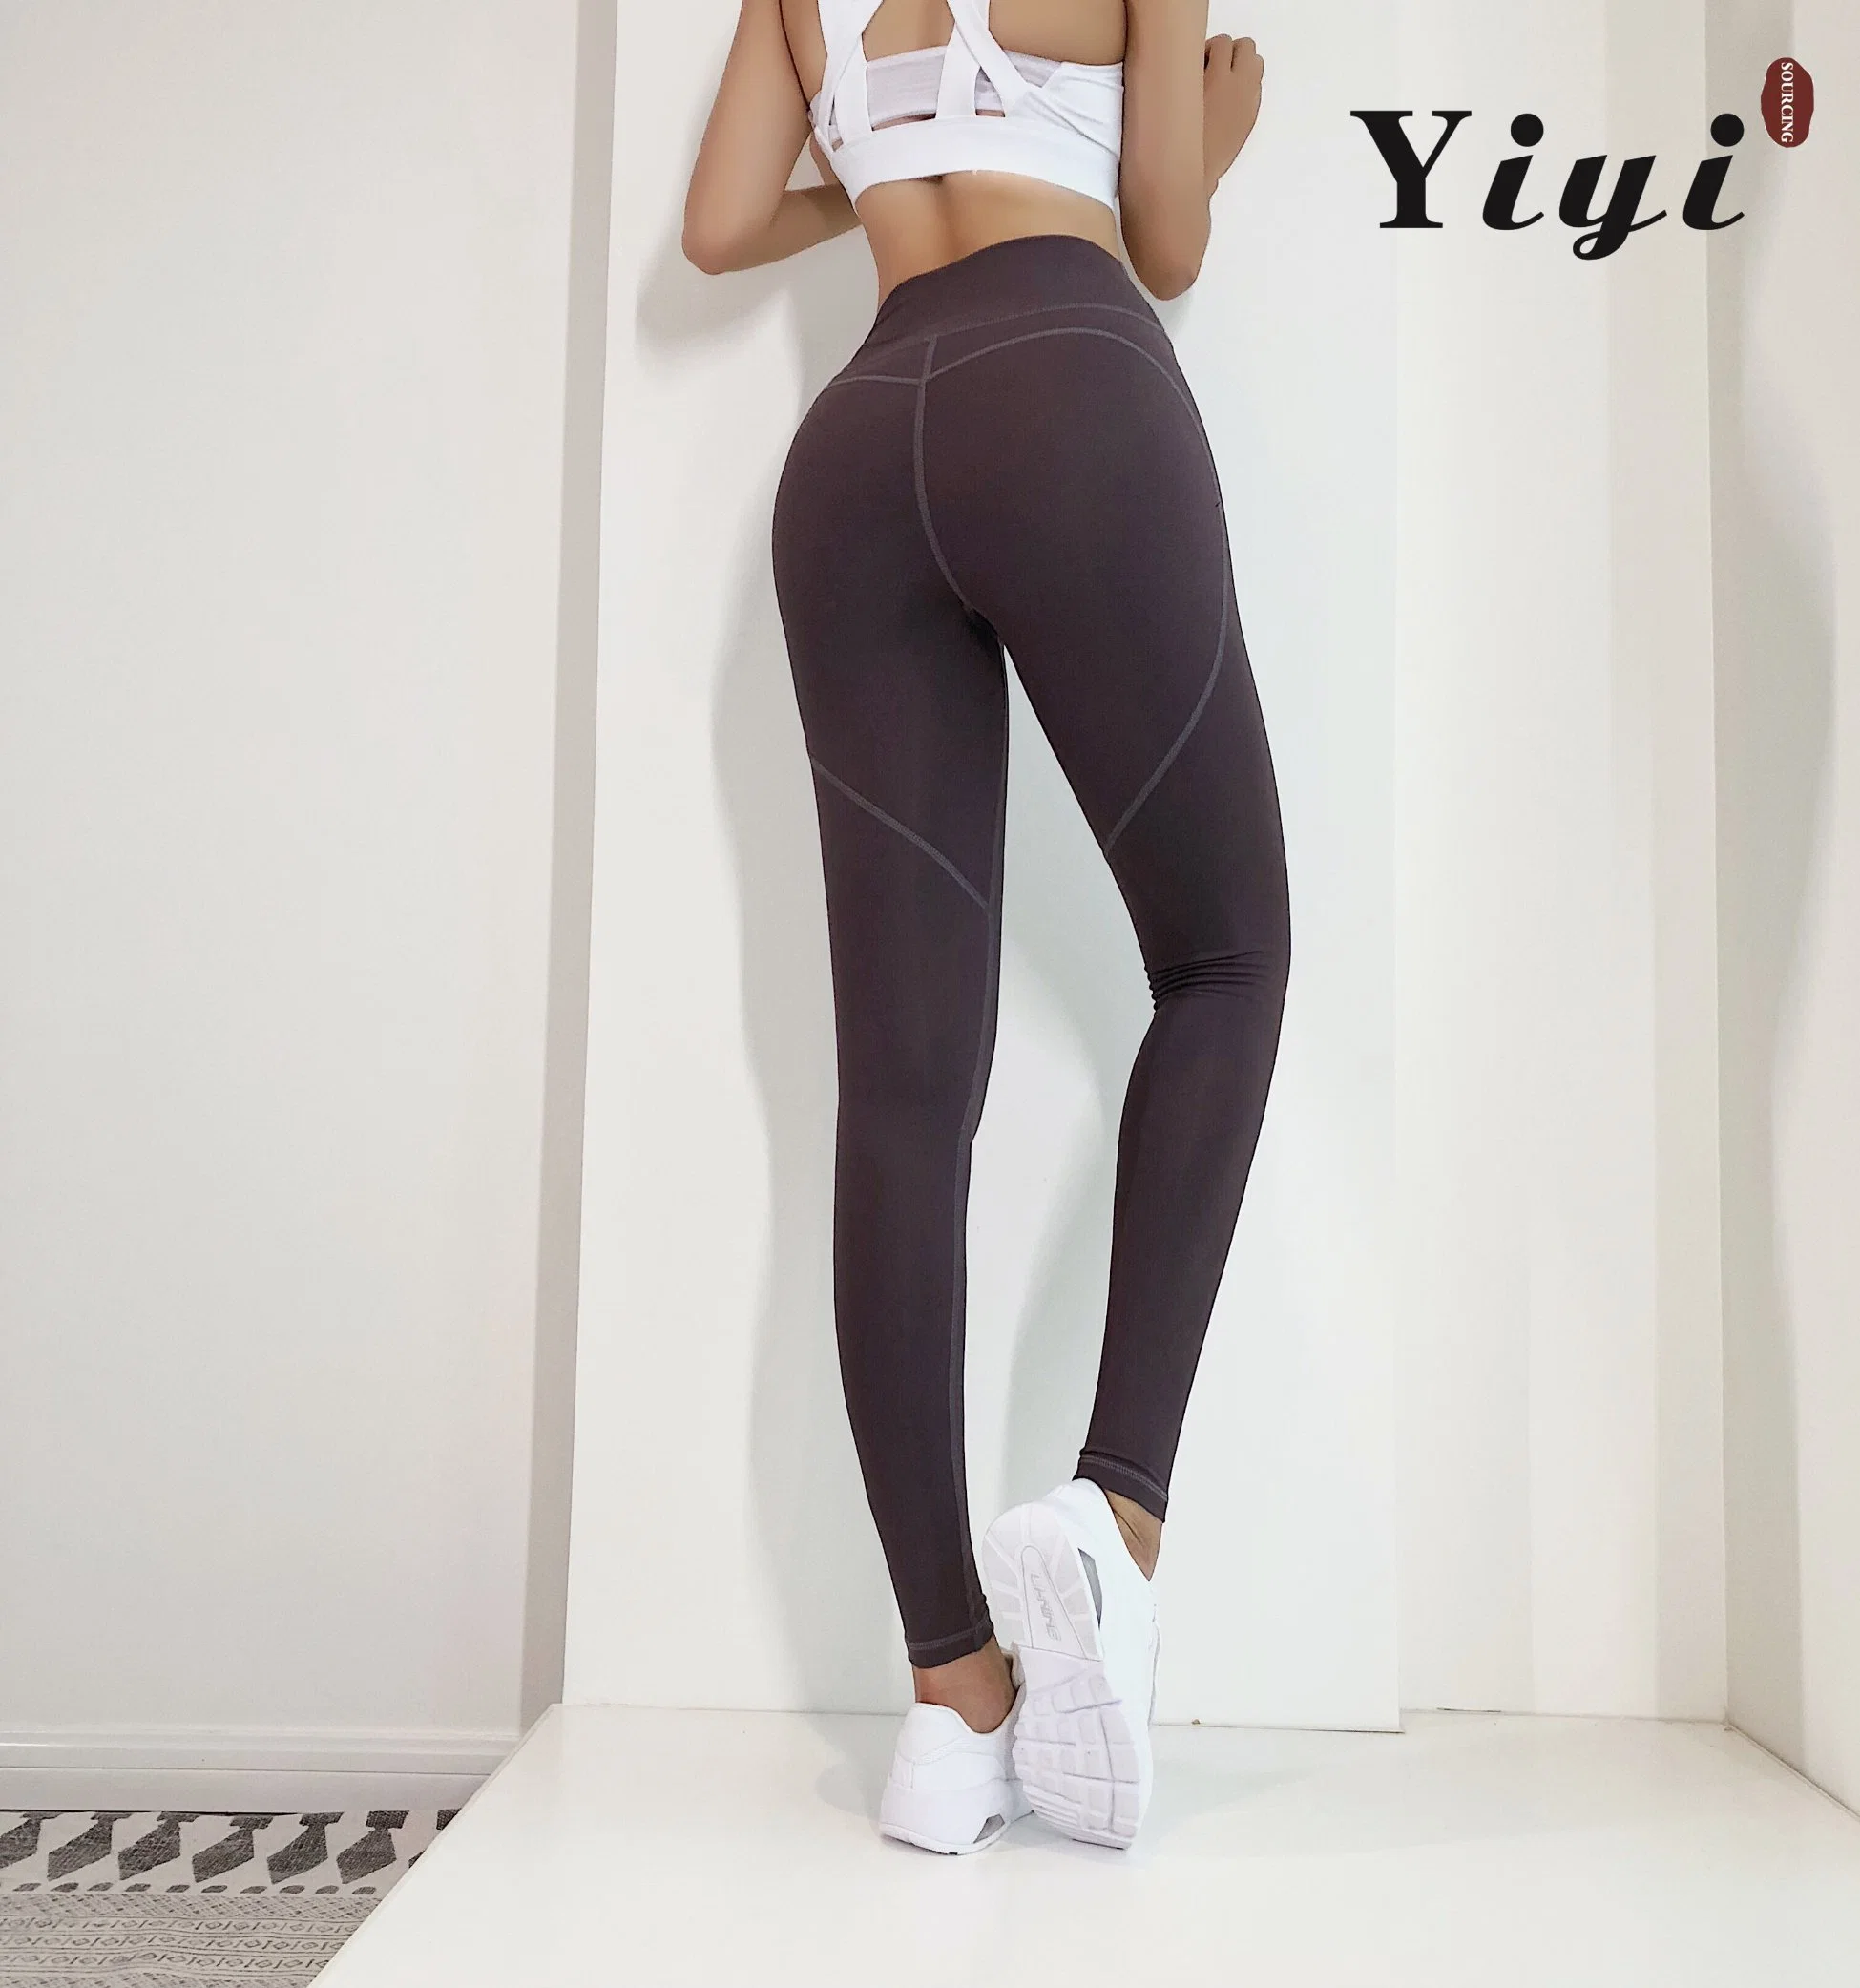 Logo personnalisé femmes Seamless Butt Sport de levage de l'exécution de l'entraînement Salle de Gym Fitness Trainer Yoga pantalons taille haute